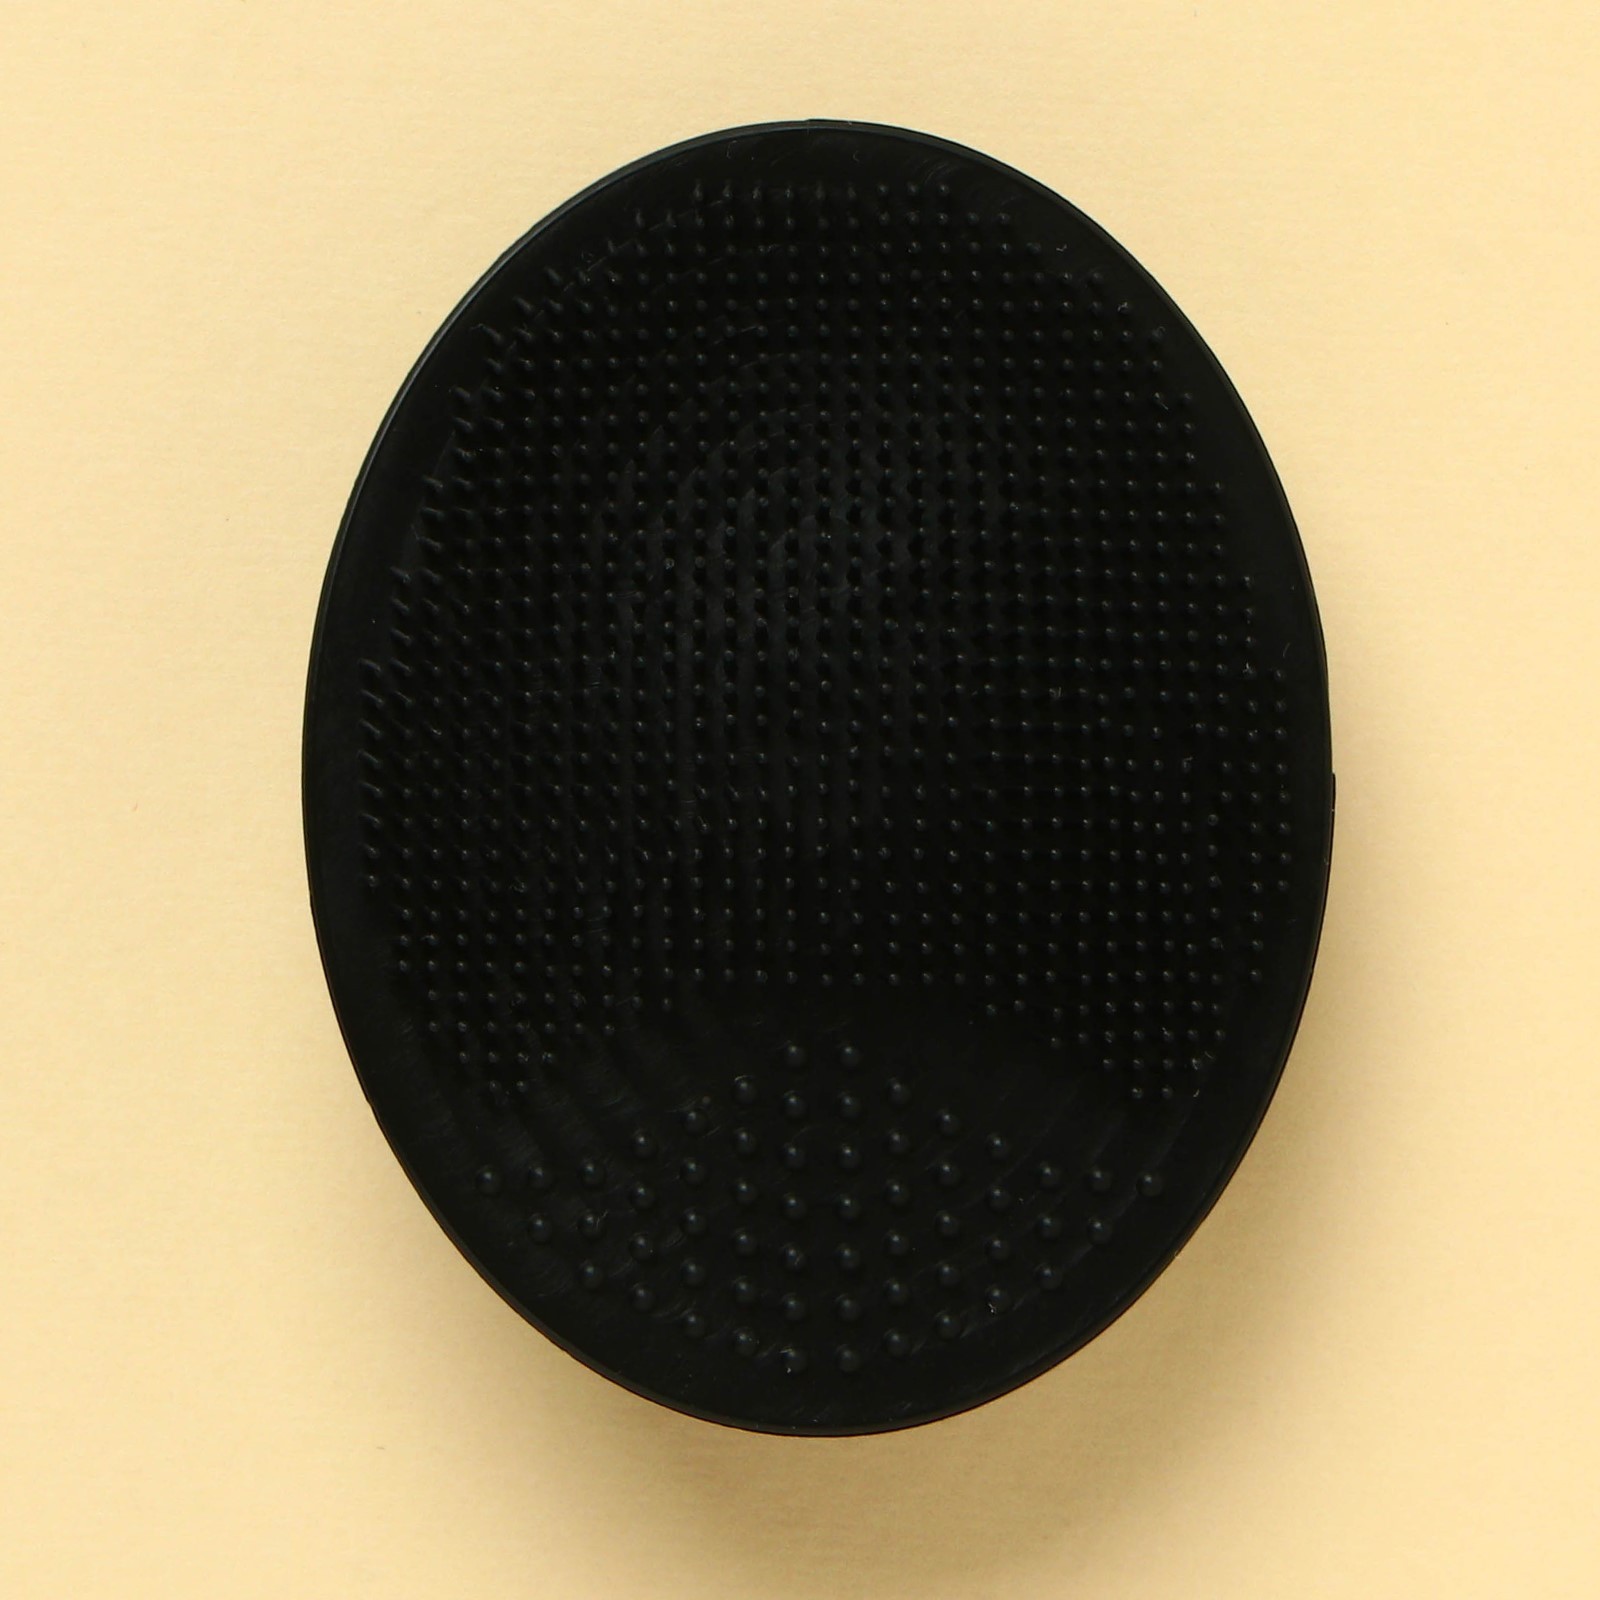 Спонж Art beauty, щёточка для умывания черная, 10,5 х 15 см, 1 шт спонж для умывания art beauty для твоей красоты силиконовый в пакете 6 5 х5 см